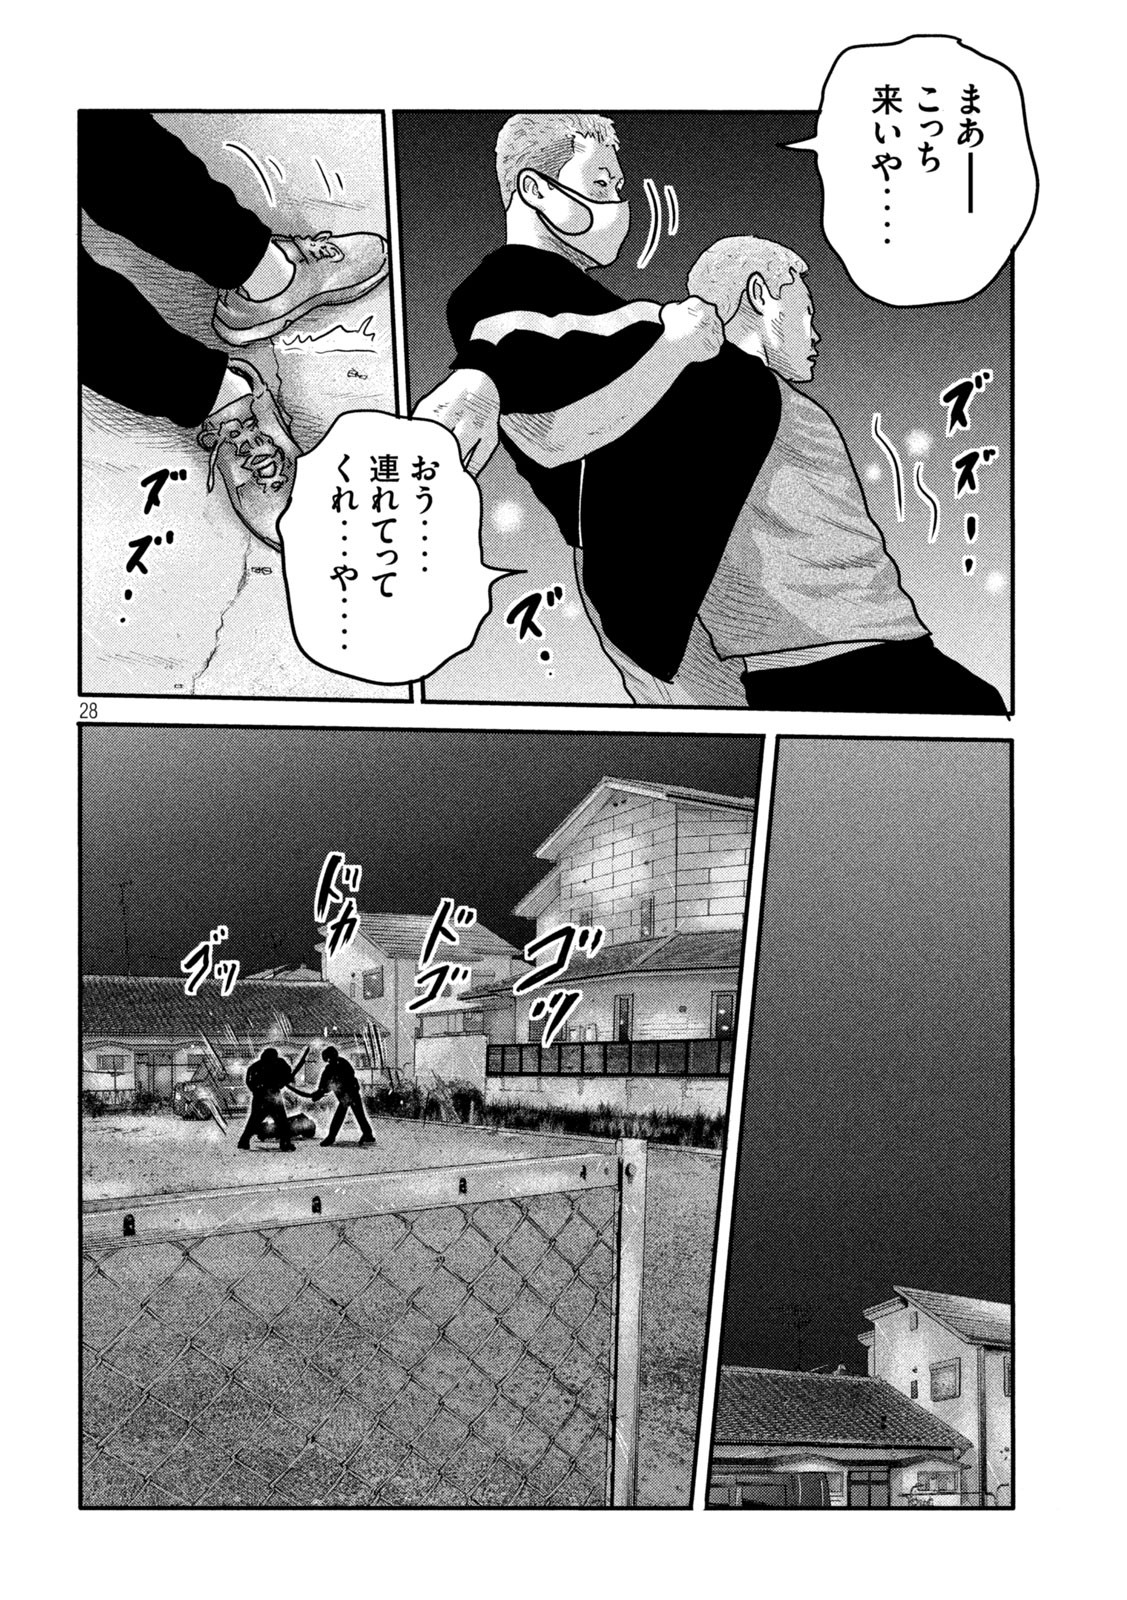 ザ・ファブル The Second Contact 第2話 - Page 28